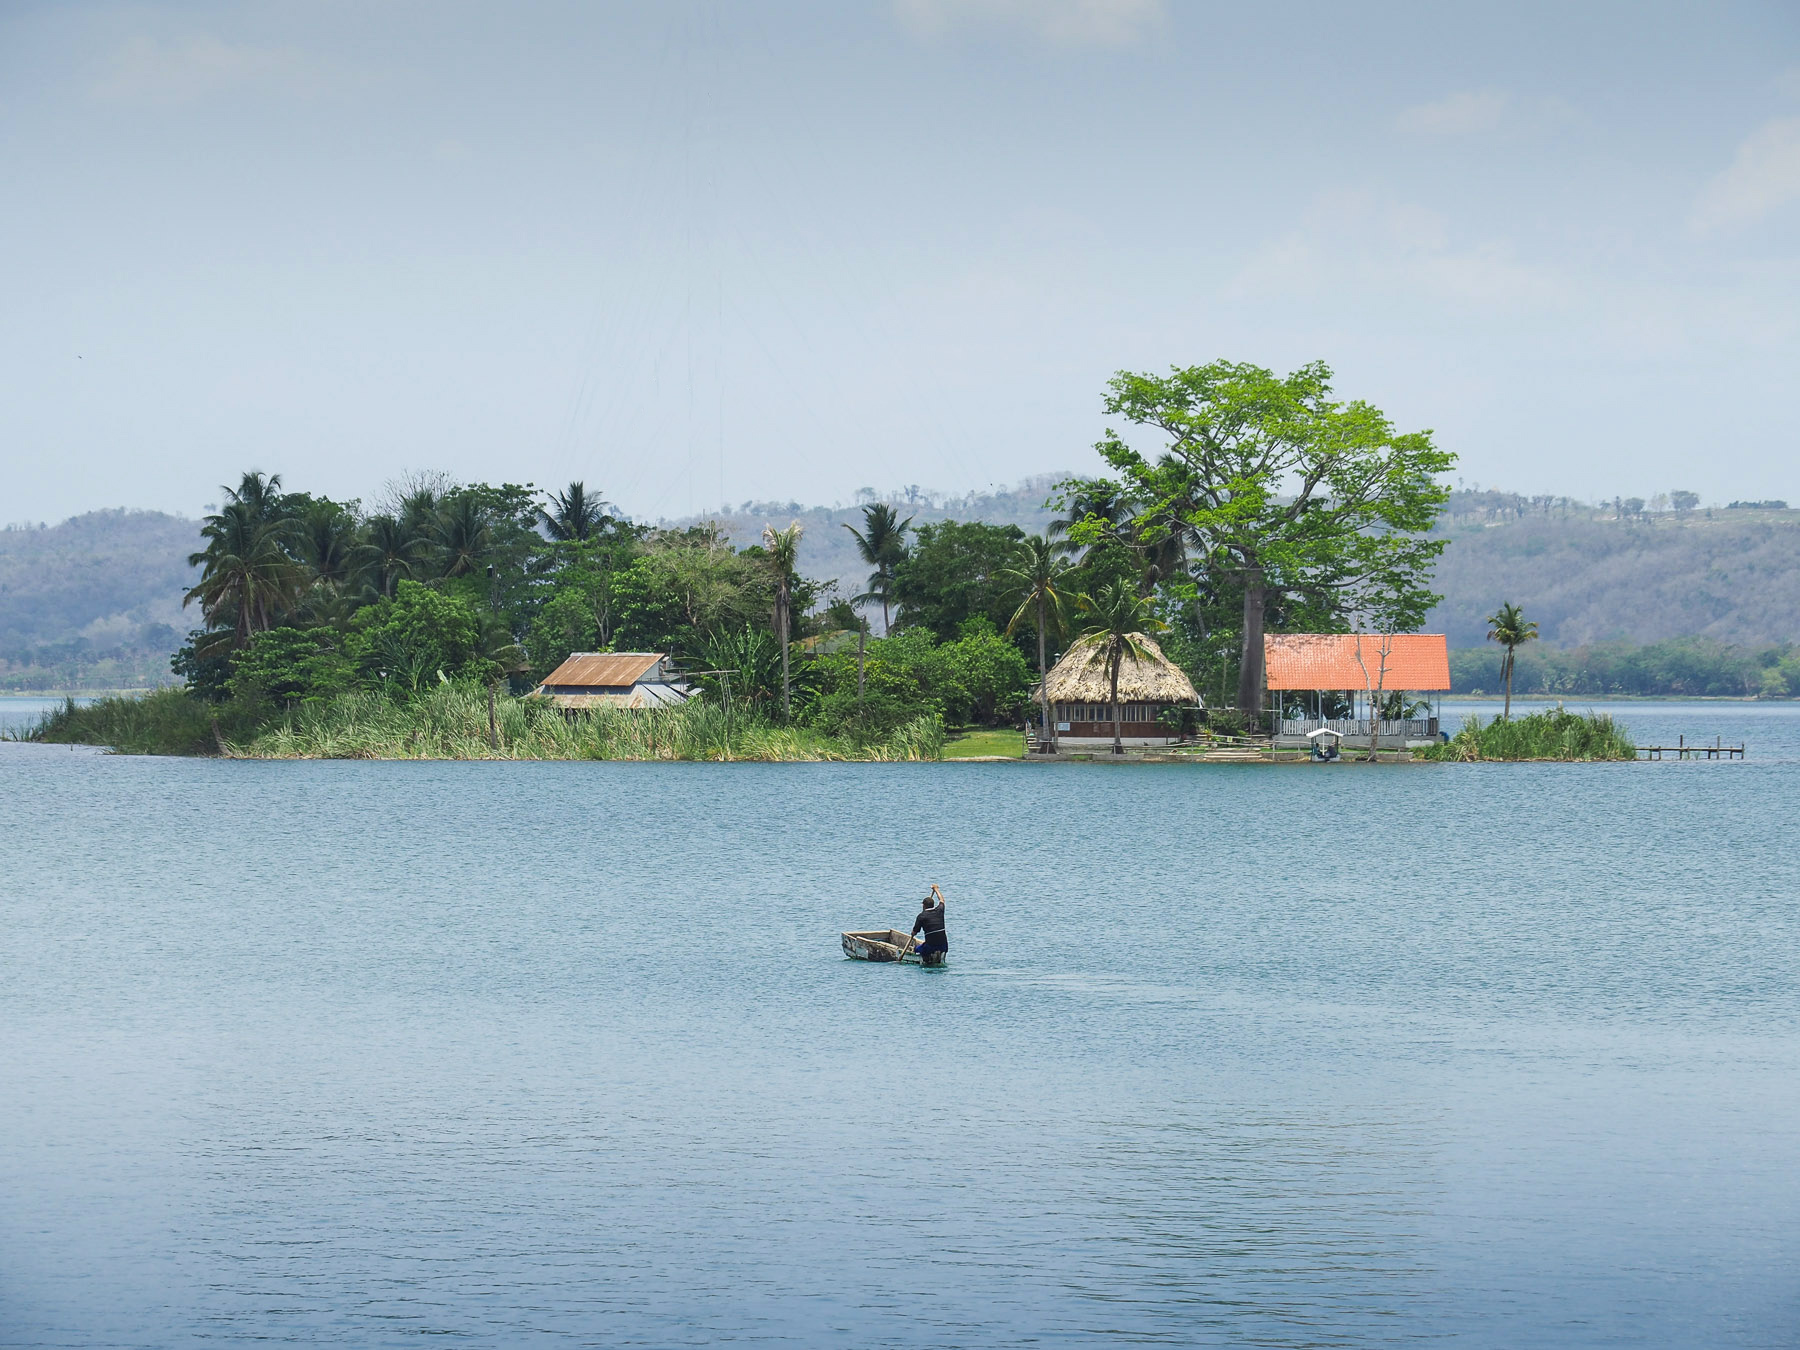 Insel vor Flores, Lago Peten Itza, im heißen, schwülen Tiefland von Guatemala